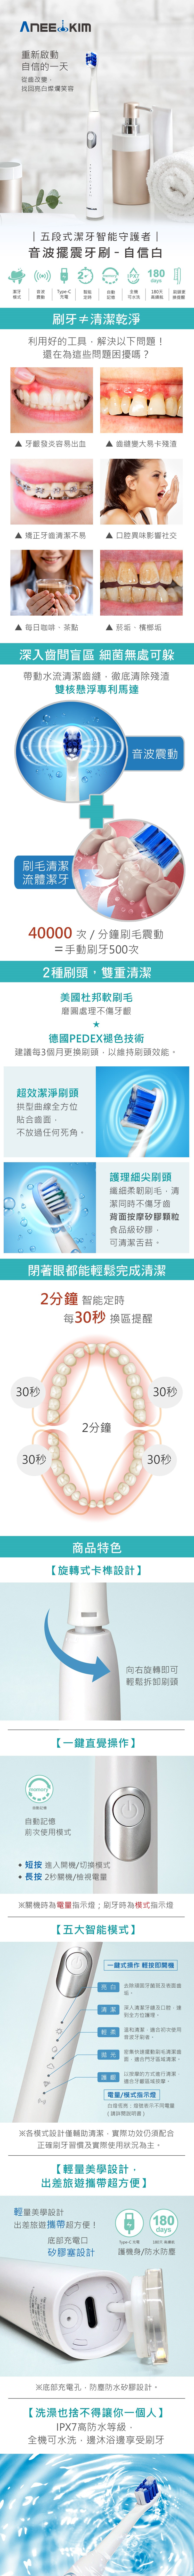 韓國ANEEKIM 電動牙刷機-白色(主機x1、亮白清潔刷頭x1、電源線x1、說明書x1)